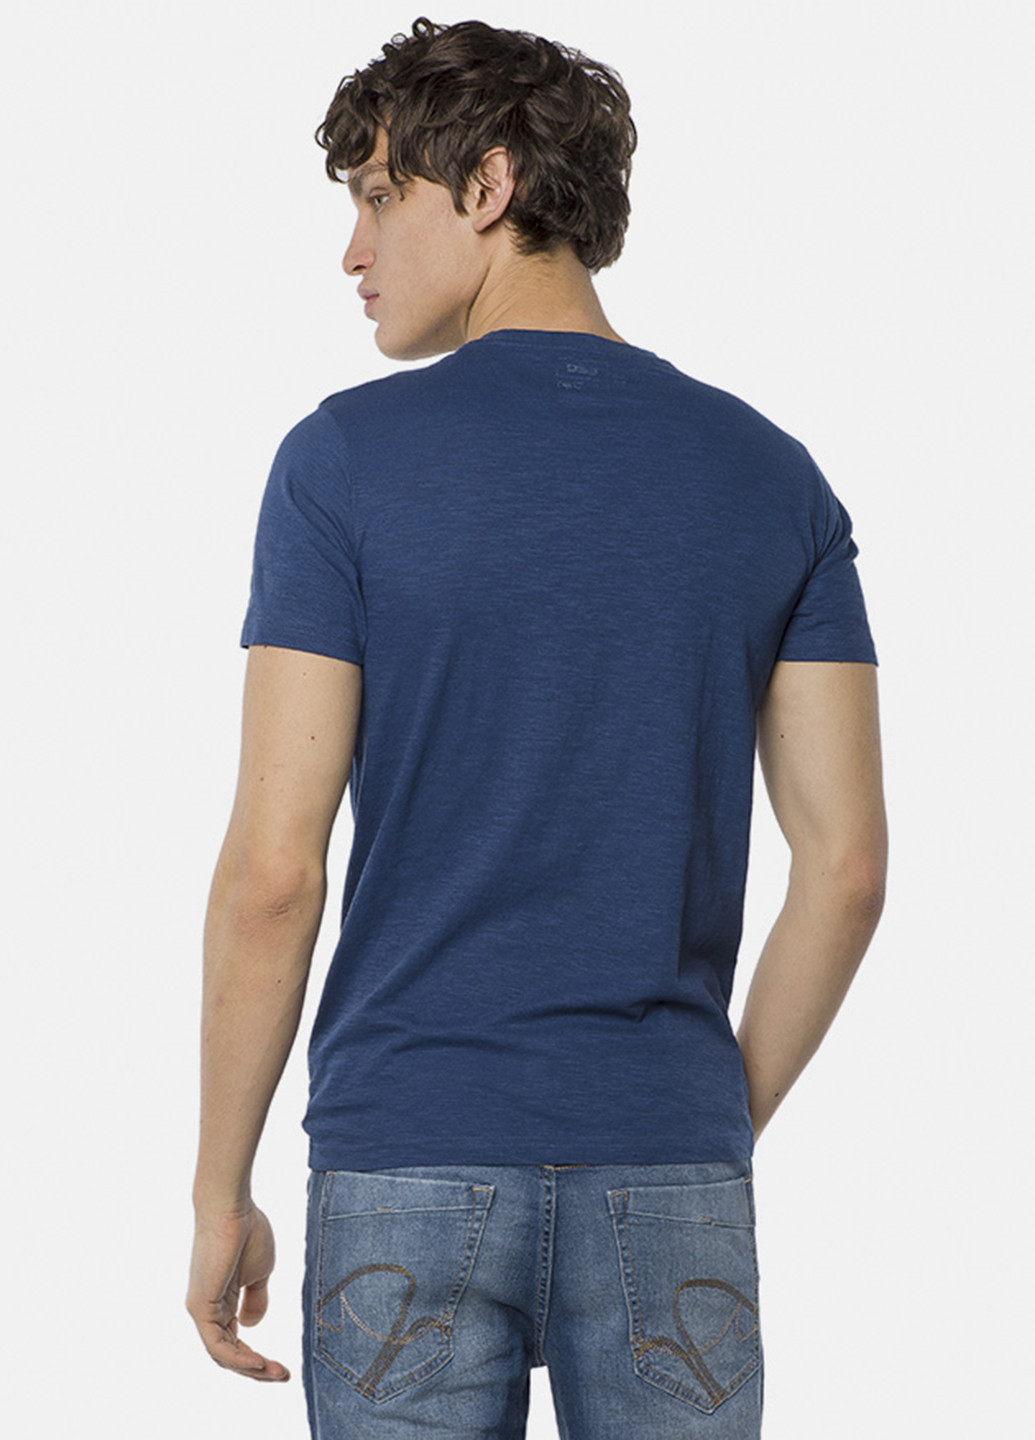 Темно-синяя летняя футболка MR 520